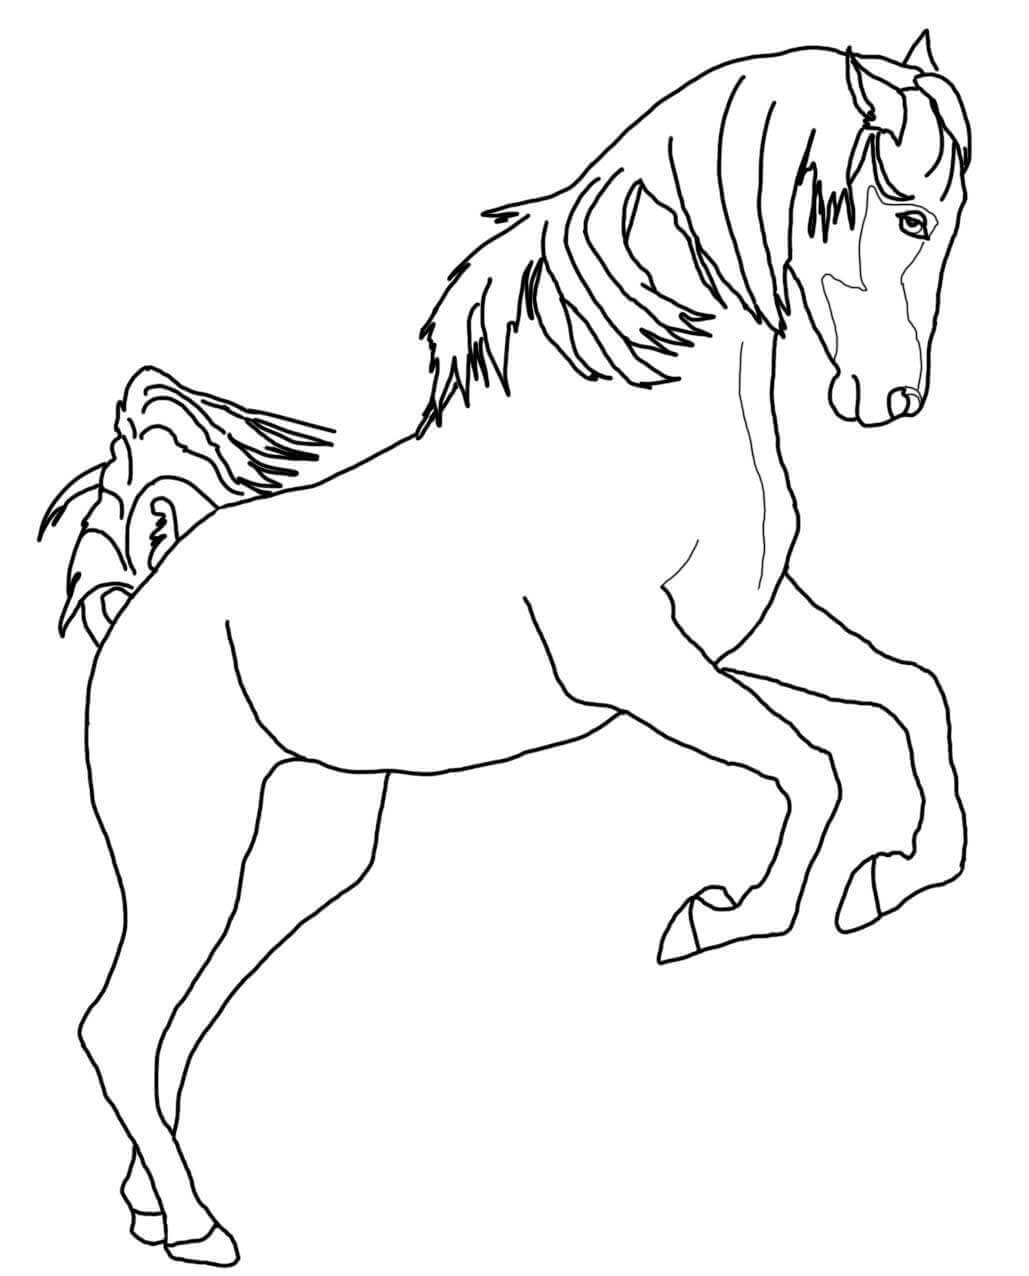 Dibujos de caballos para colorear e imprimir gratis, caballos para pintar